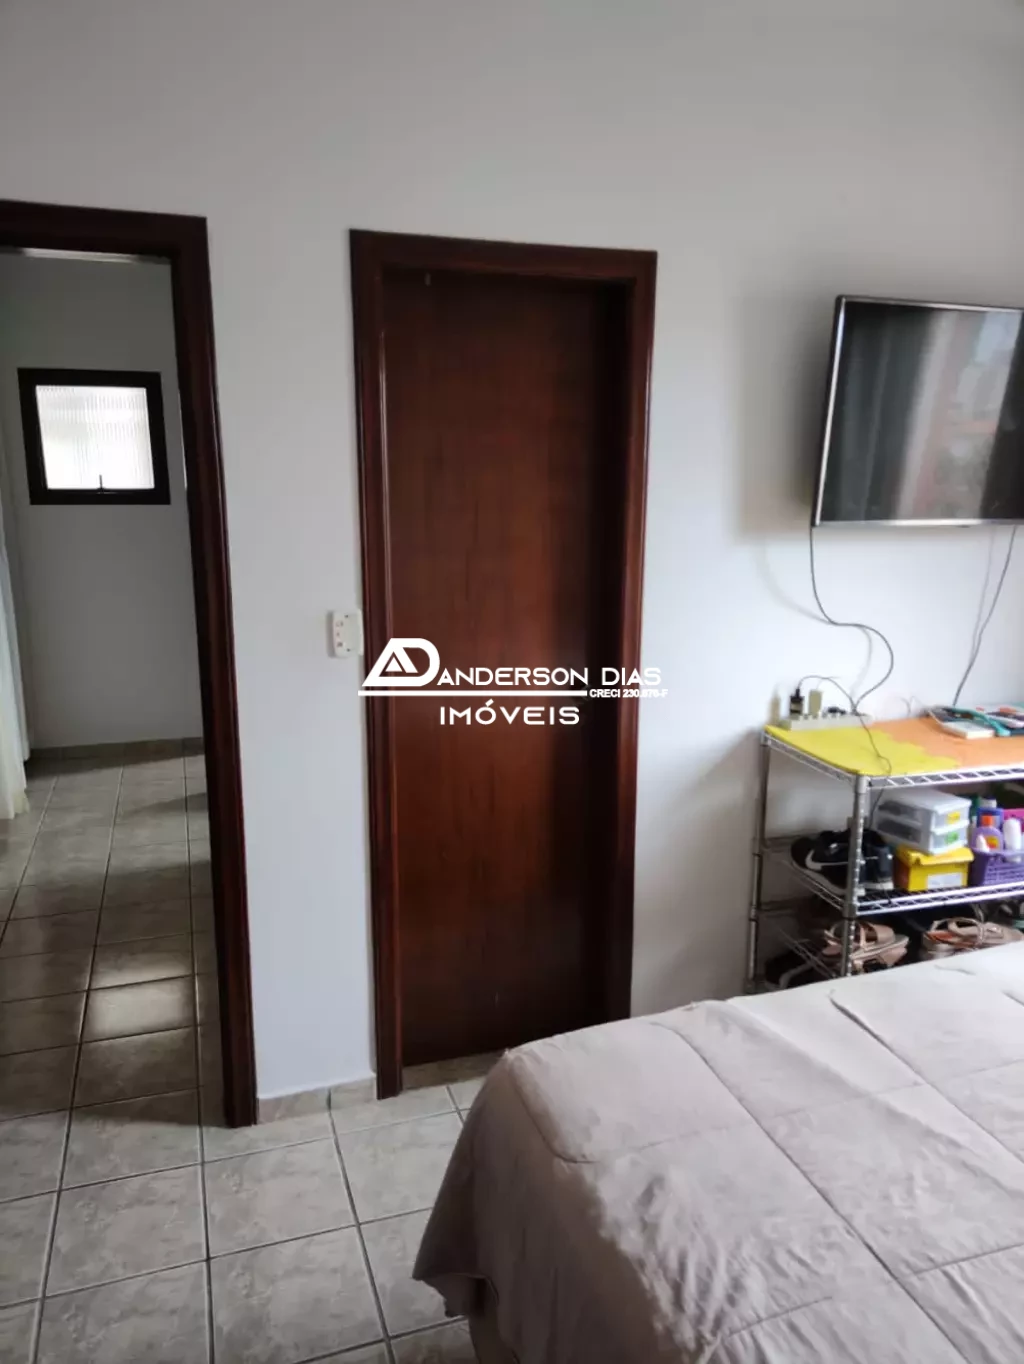 Apartamento com 3 dormitórios sendo 1 suíte á venda, 92m² por R$ 360.000 - Martim de Sá- Caraguatatuba/SP